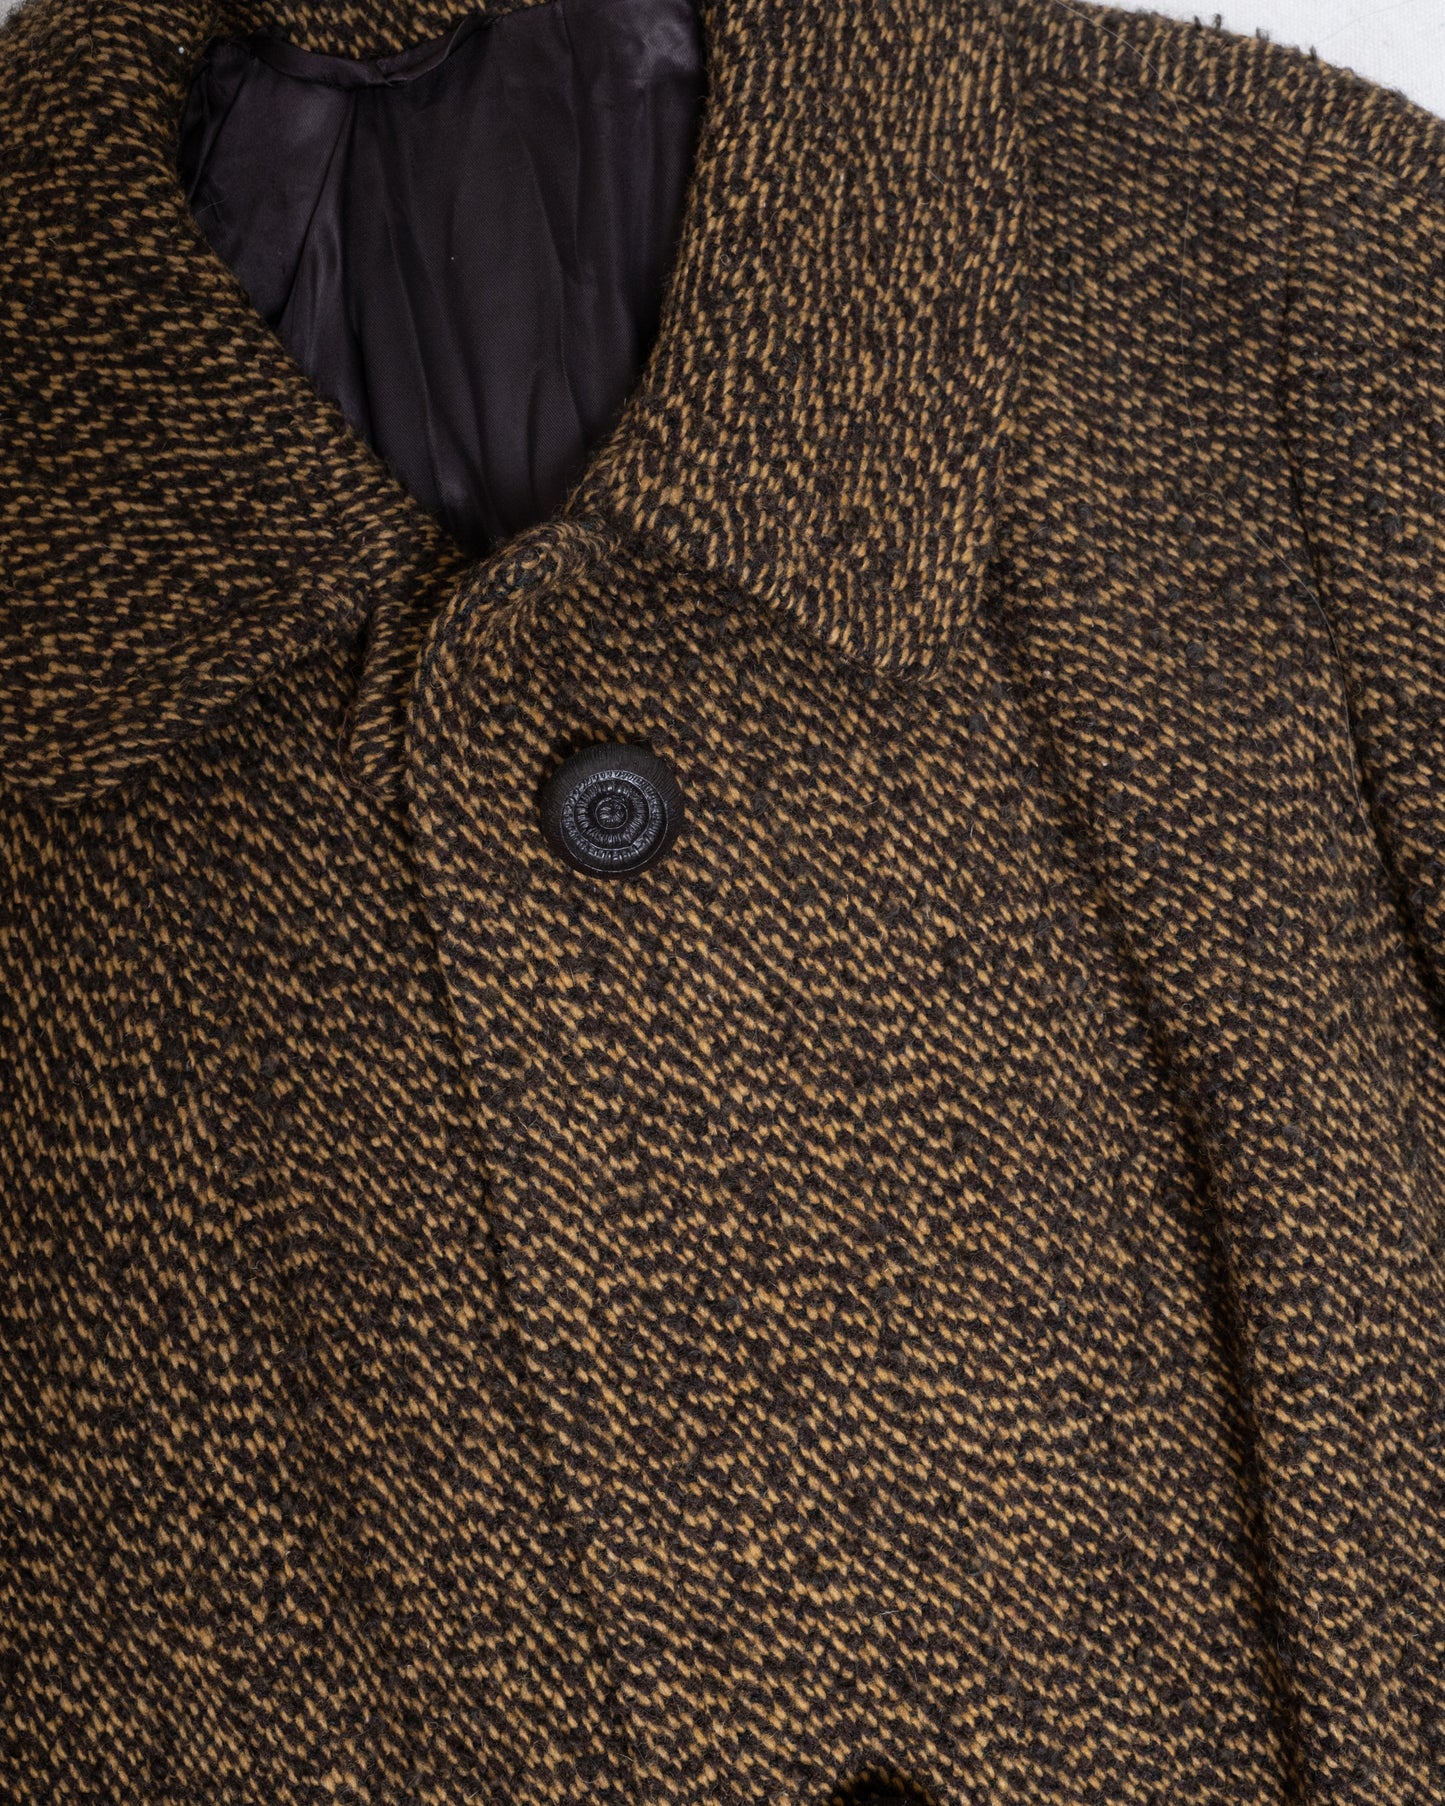 Vintage 60s Tweed Coat (S/M)